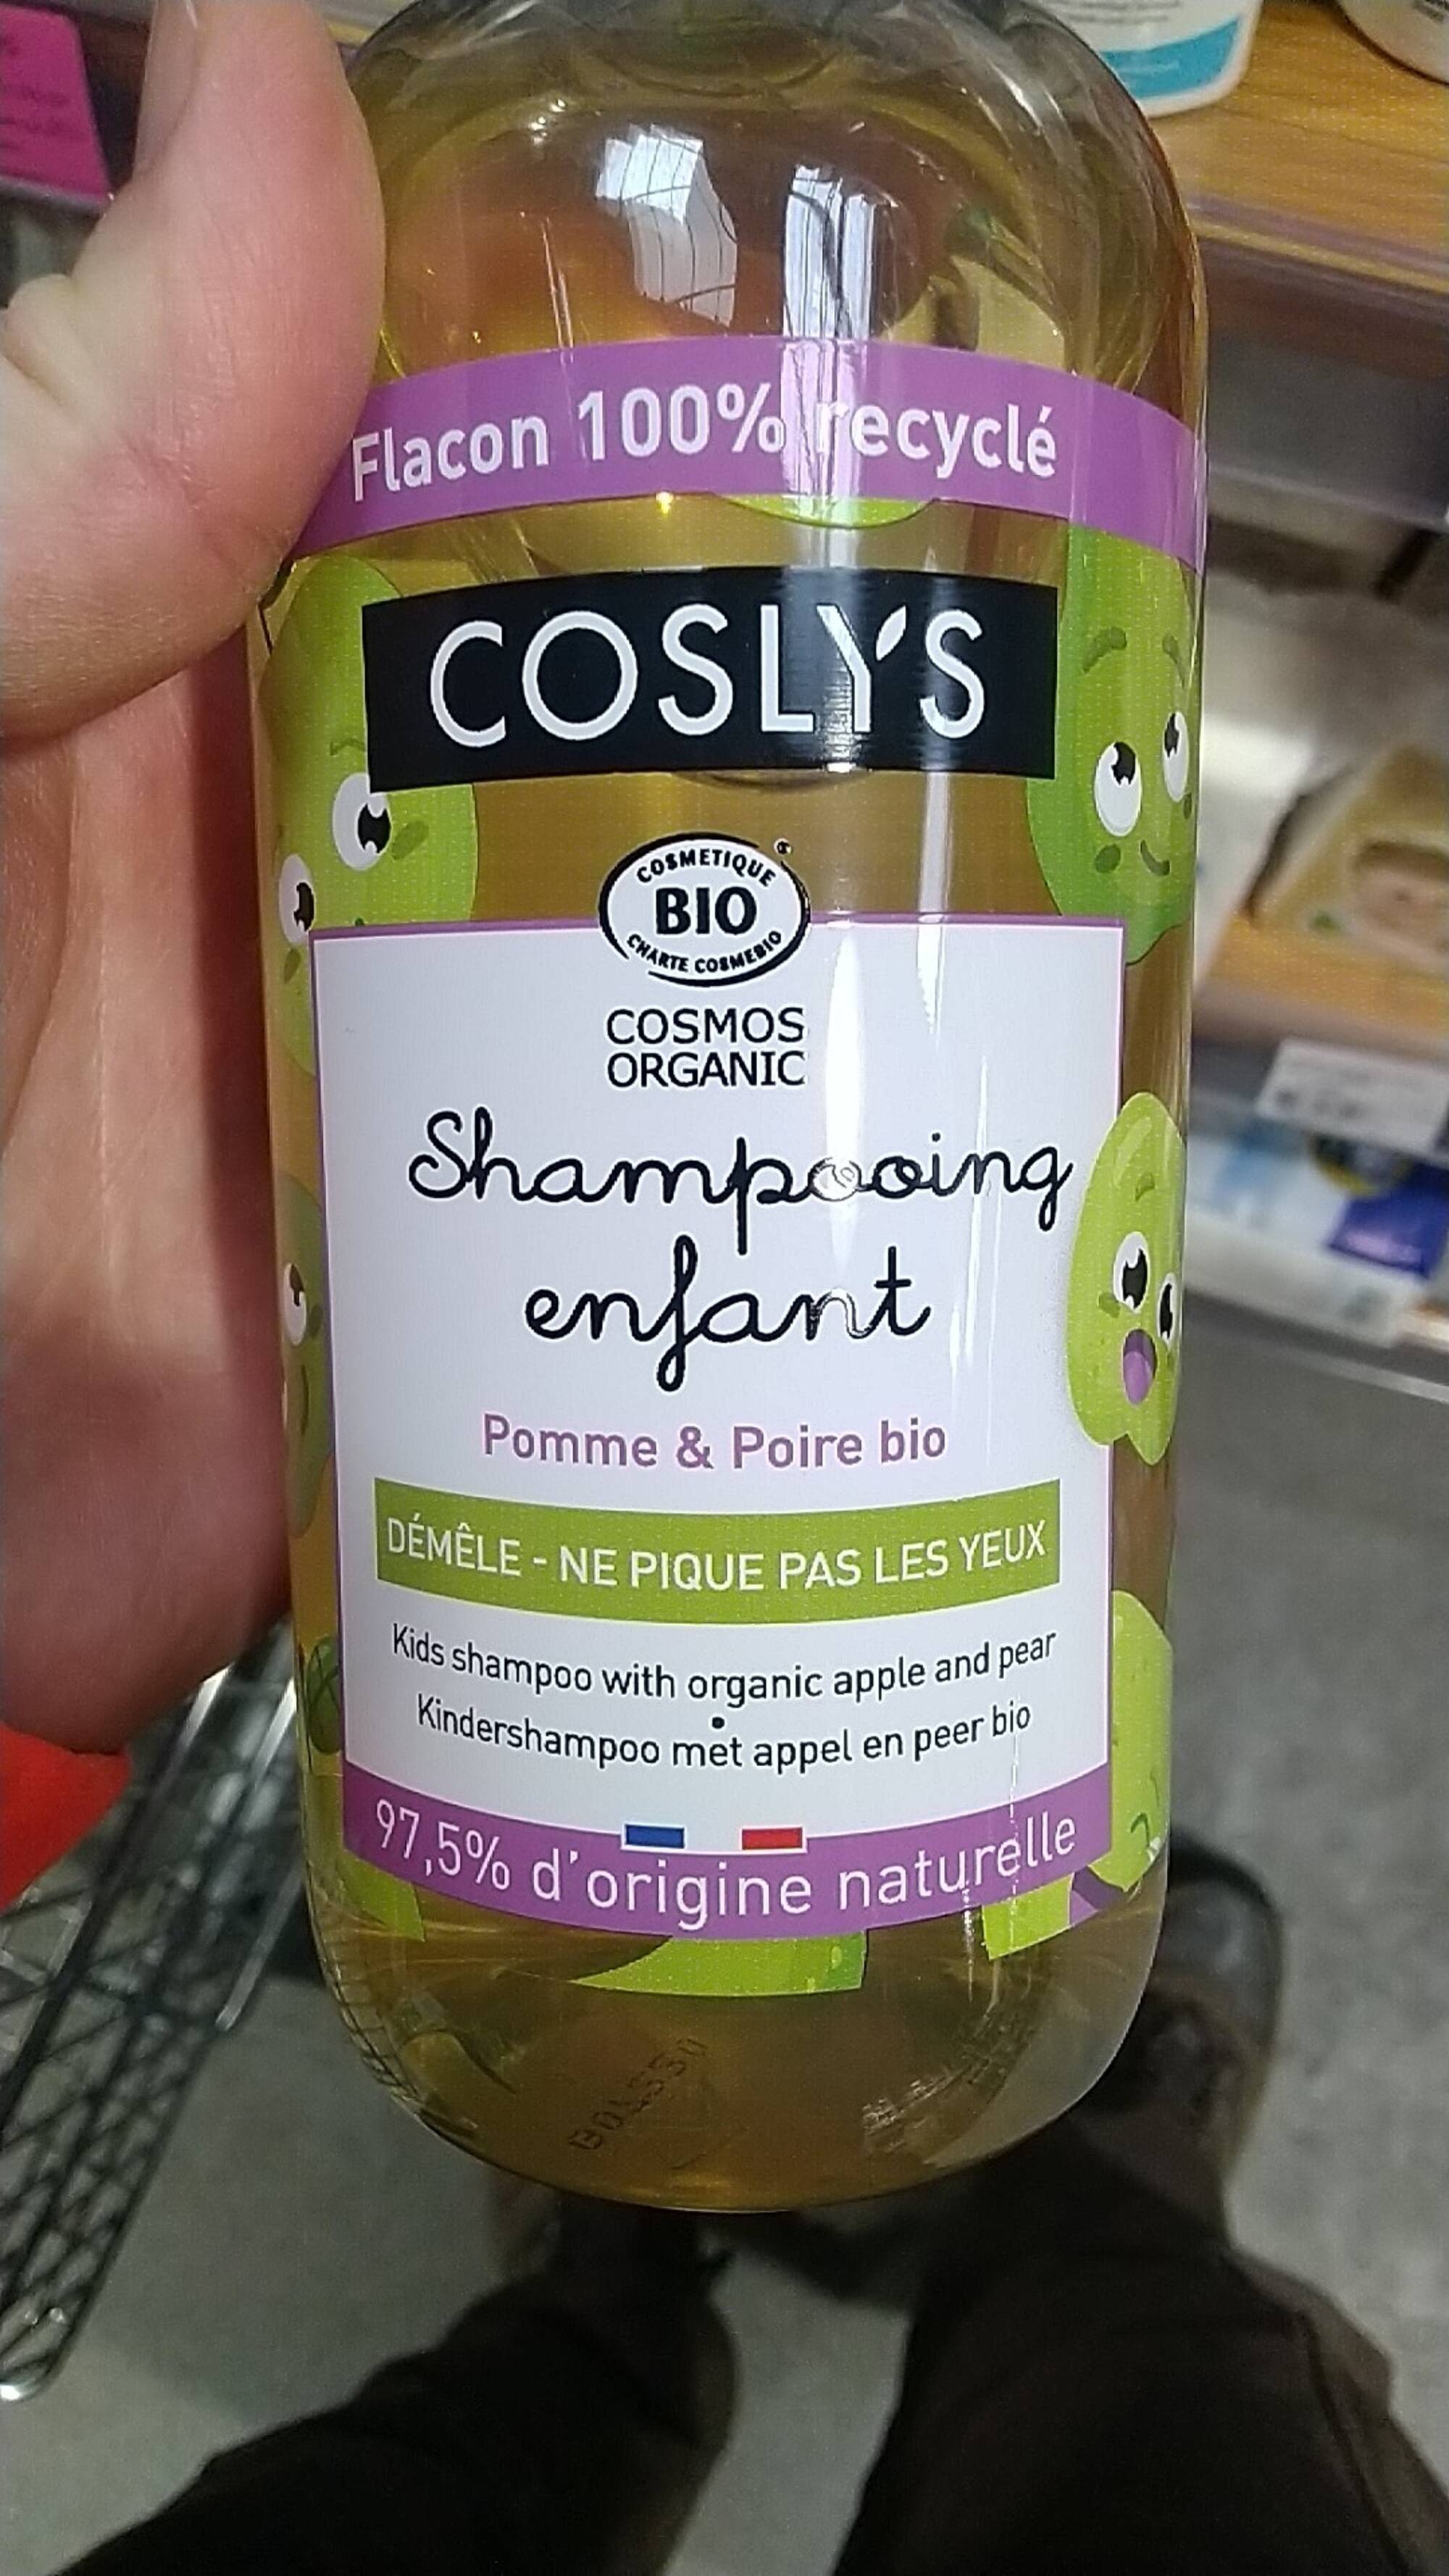 Shampooing Enfant - Pomme & Poire Bio - Coslys